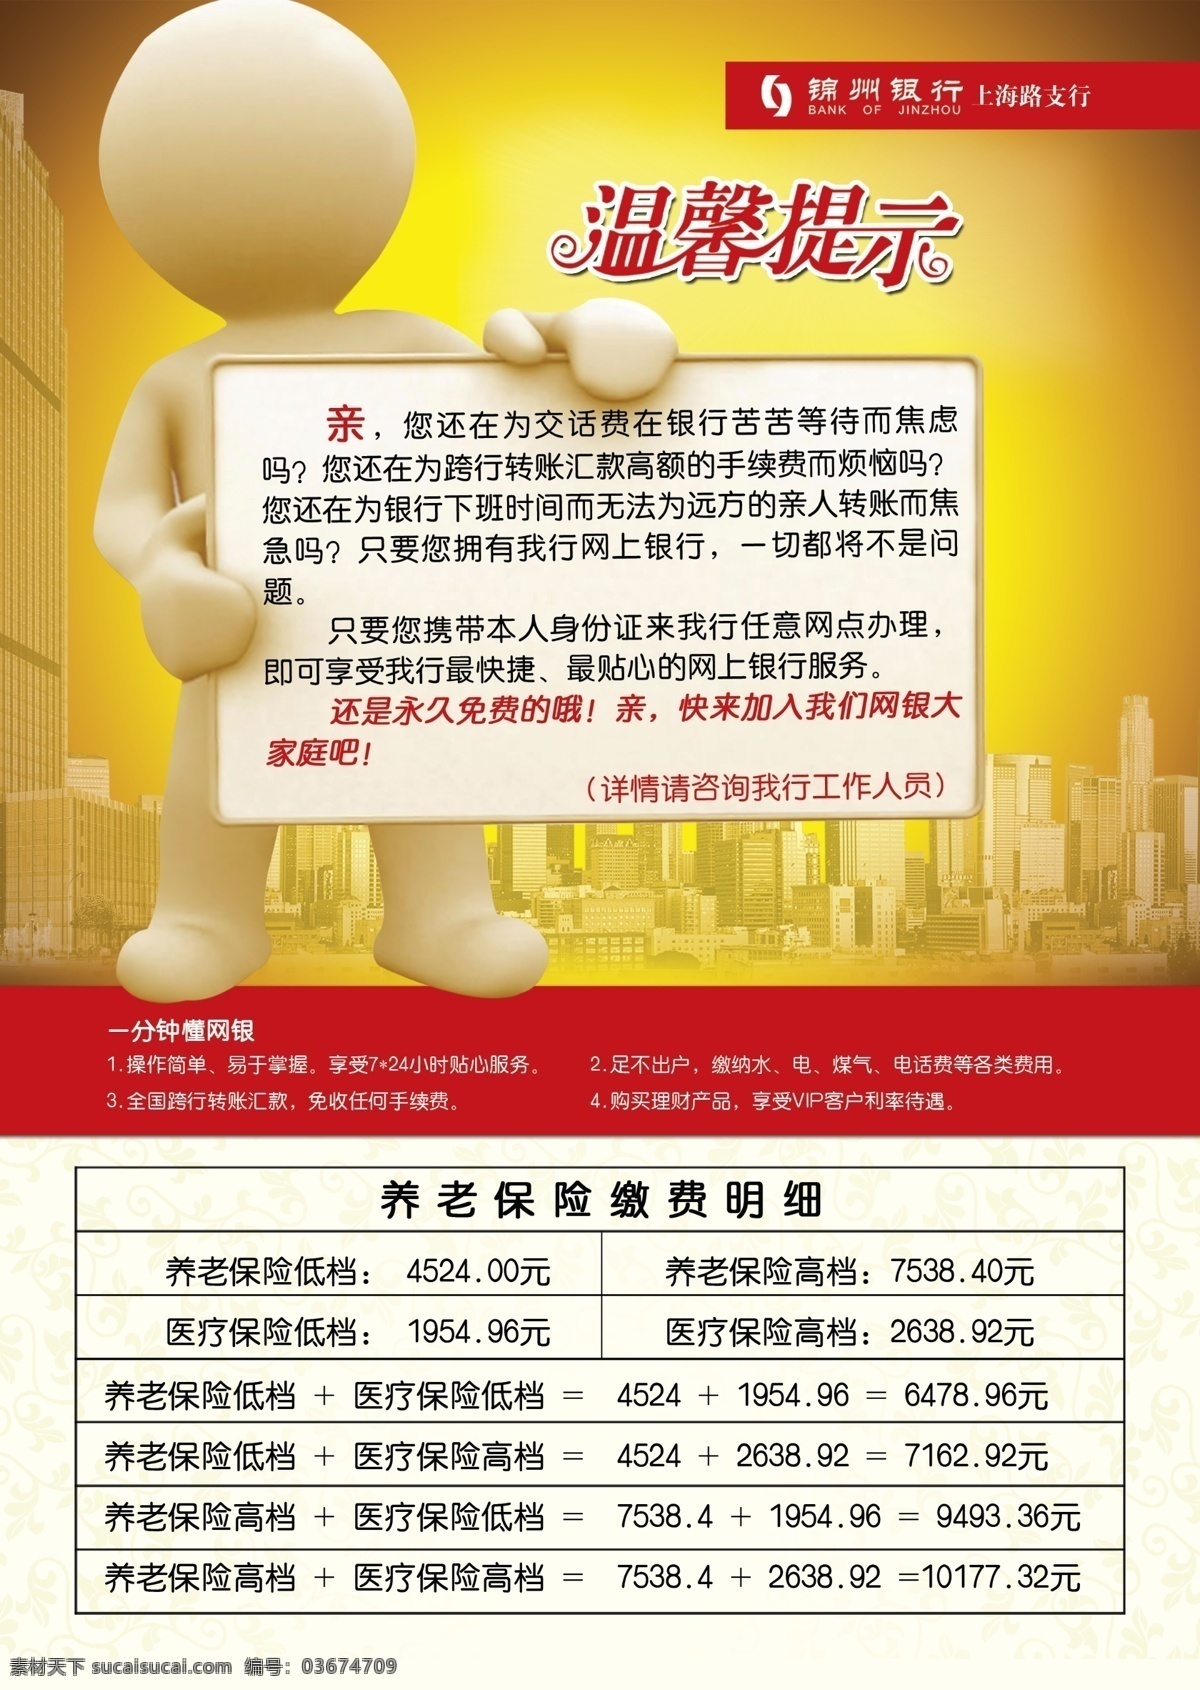 温馨提示 锦州银行 3d小人 楼 养老保险 缴费 明细 暖色 宣传单 dm宣传单 广告设计模板 源文件